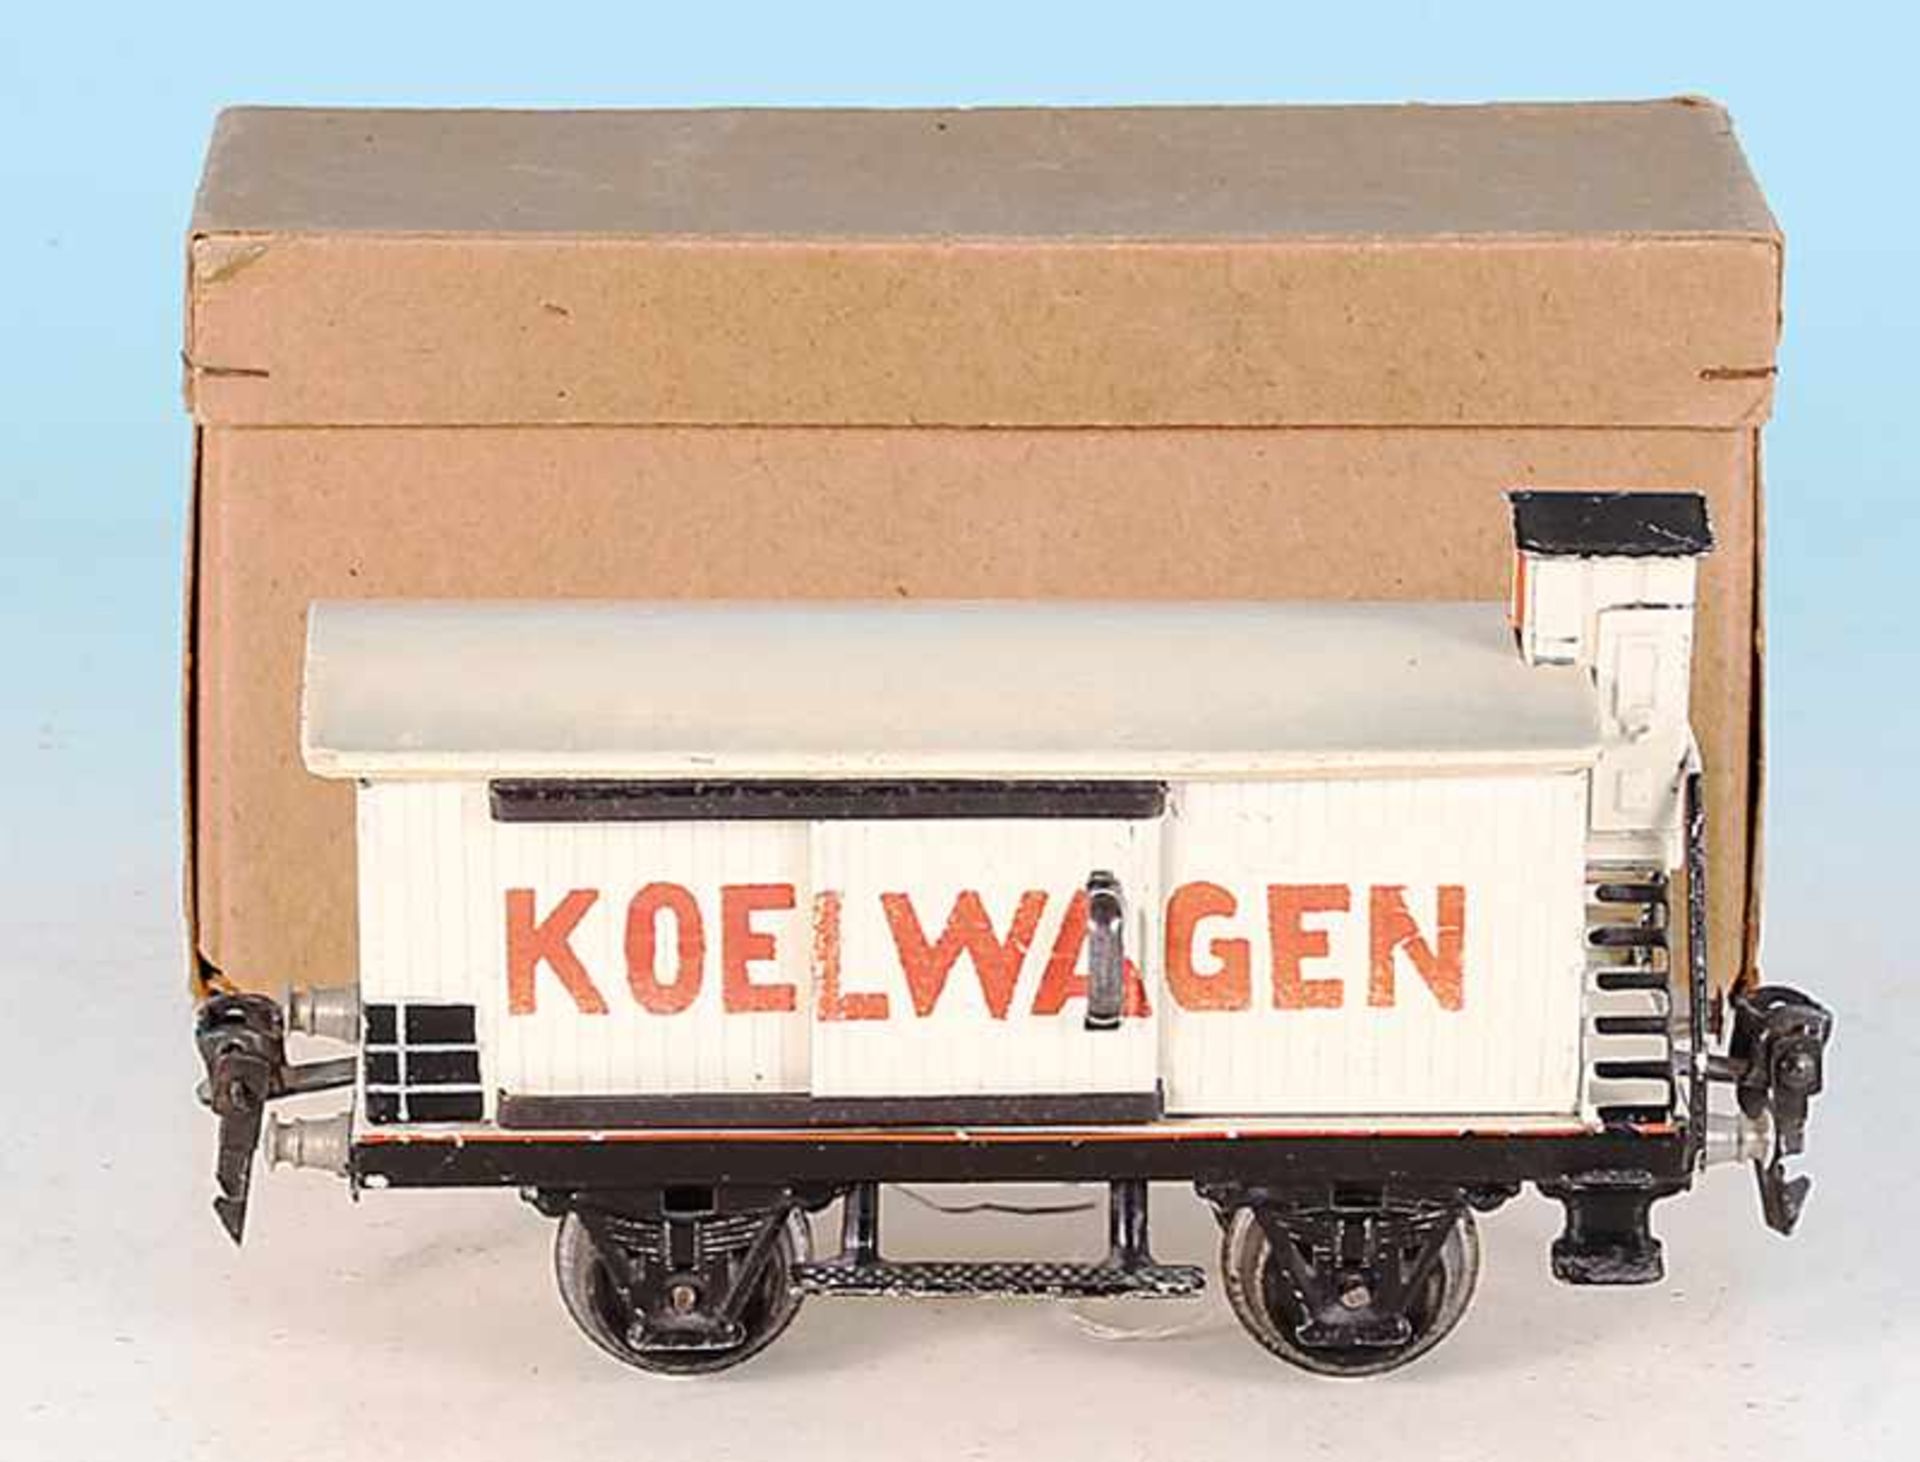 MARKLIN Koelwagen 1987/0 NL Exportversion fuer Holland - Bild 2 aus 2